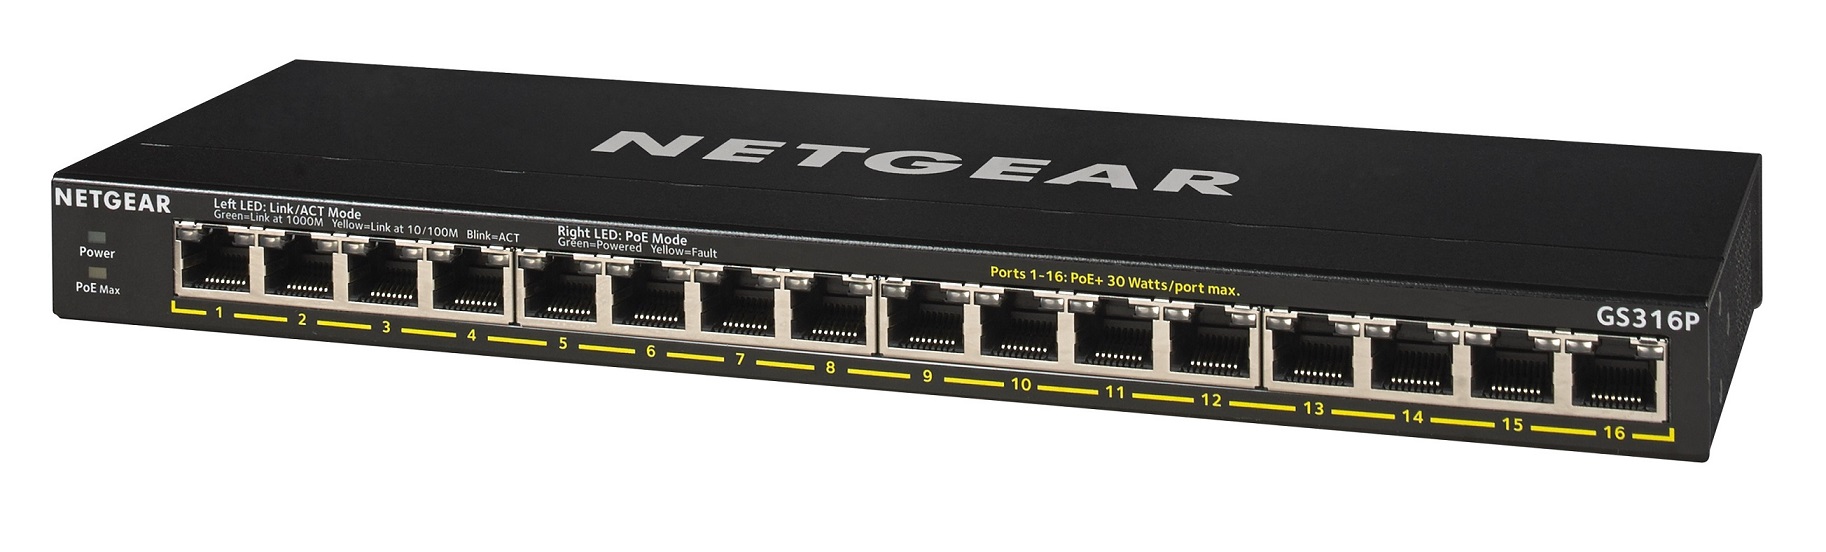 Netgear GS316P  16 port  gigabit PoE+  switch (115w PoE budget)